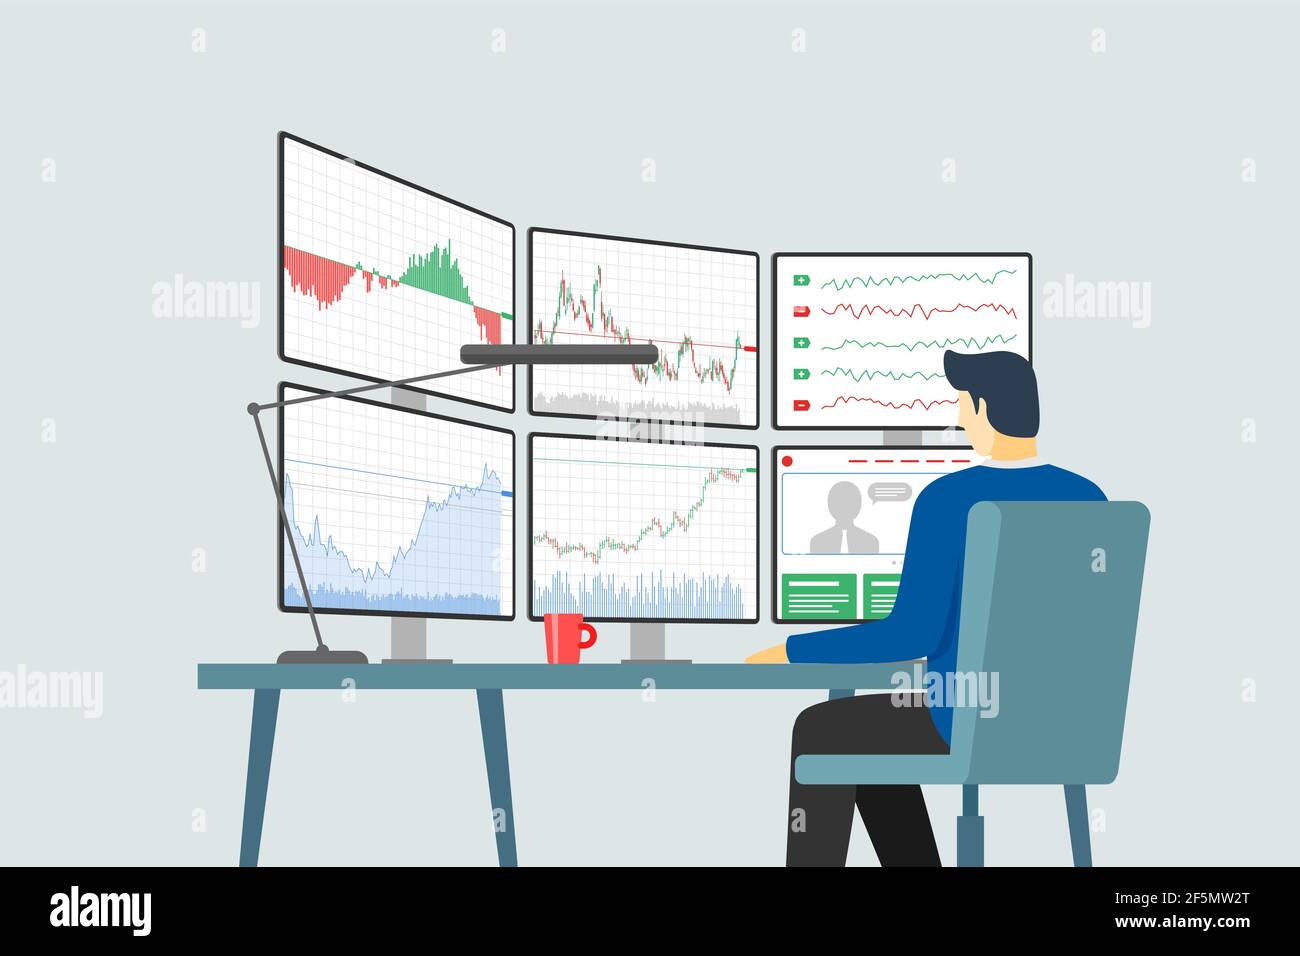 Aktienhändler am Arbeitsplatz betrachten mehrere Computerbildschirme mit Finanzdiagrammen, Diagrammen und Grafiken. Konzept der Business-Index-Analyse. Abbildung: Broker Exchange Trading Vector eps Stock Vektor